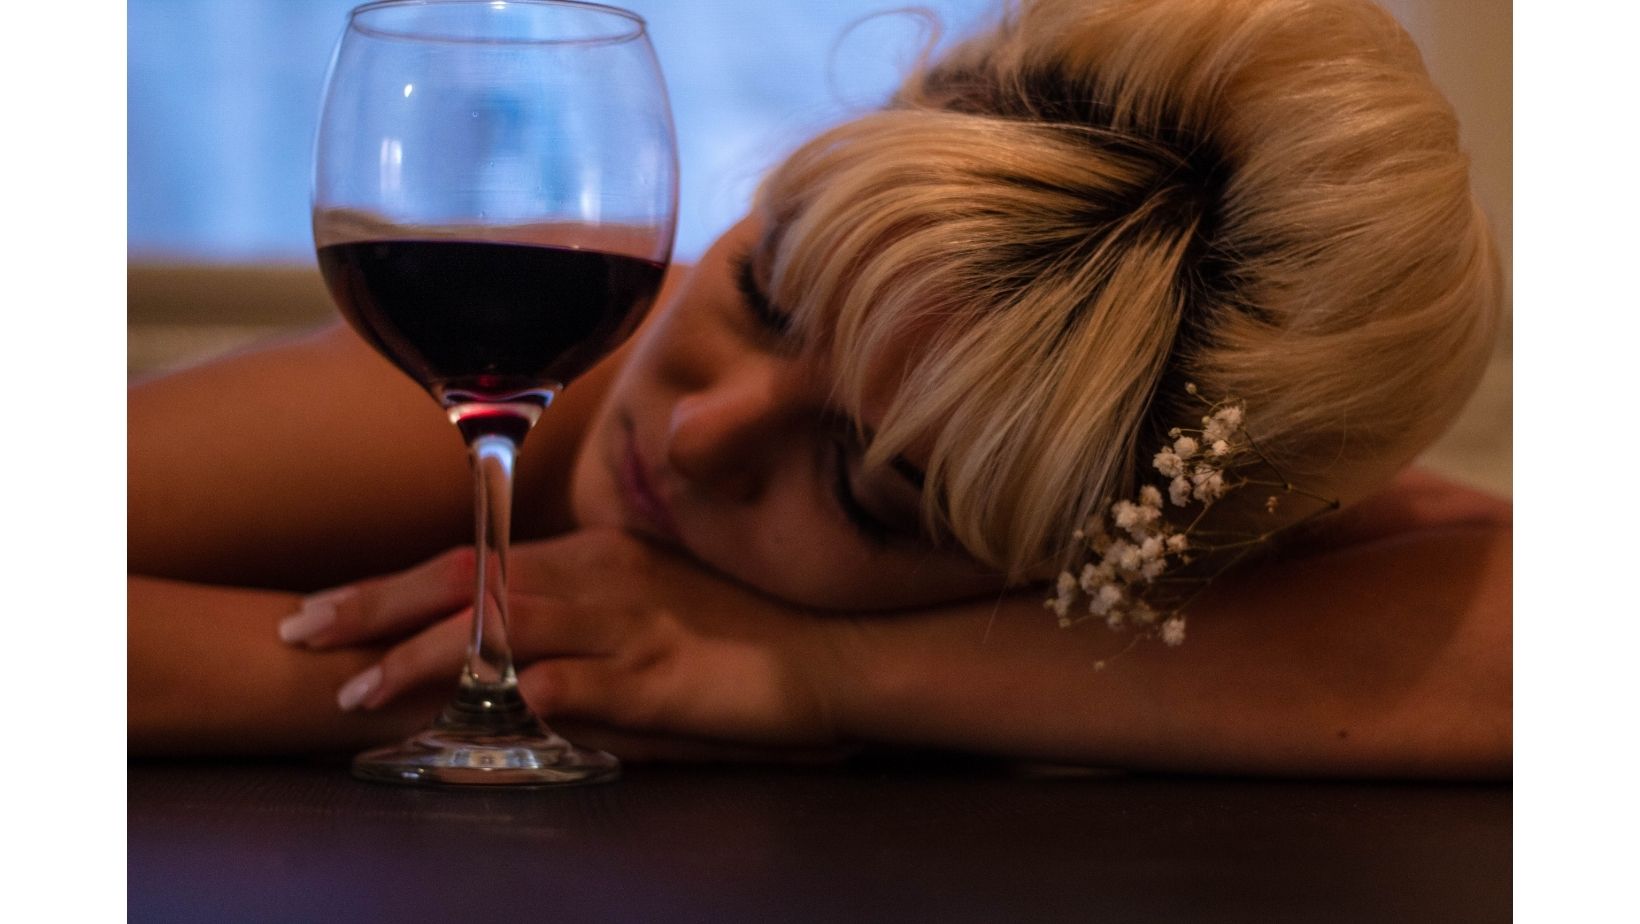 Does Wine Make You Sleepy?